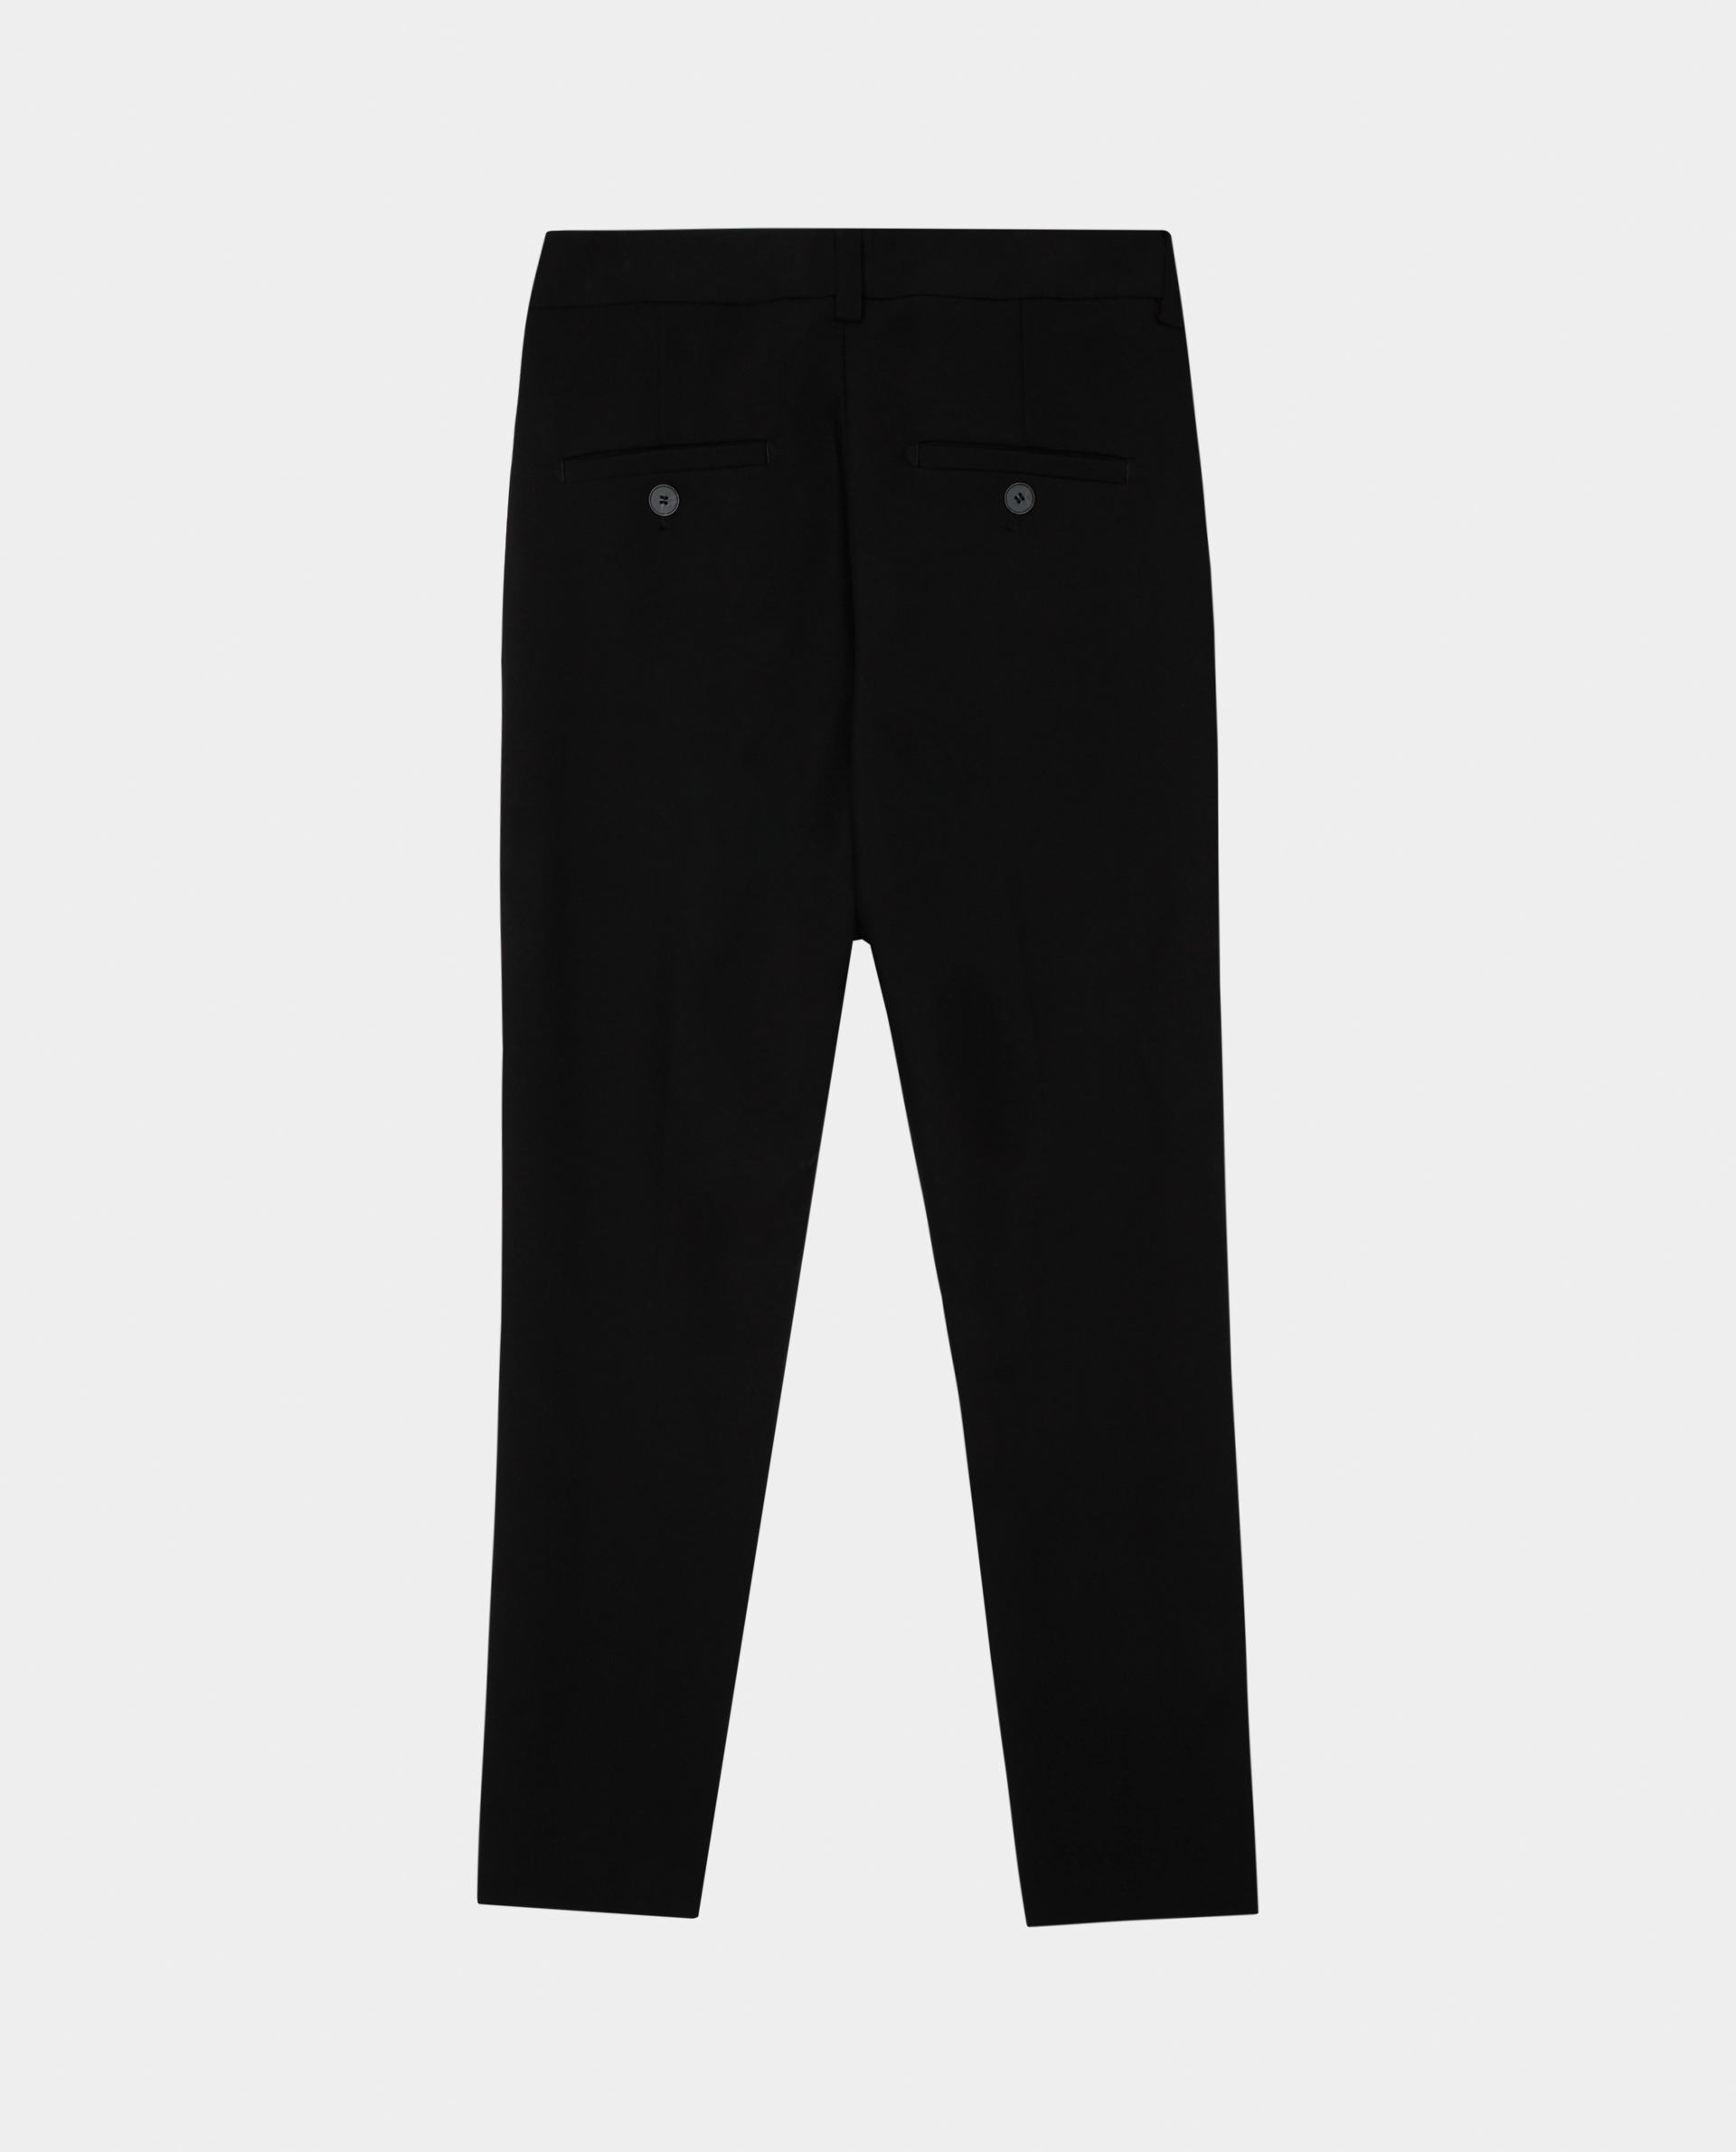 Черные узкие брюки Gulliver 220GSBC6304, размер 140, цвет черный slim / узкие - фото 4